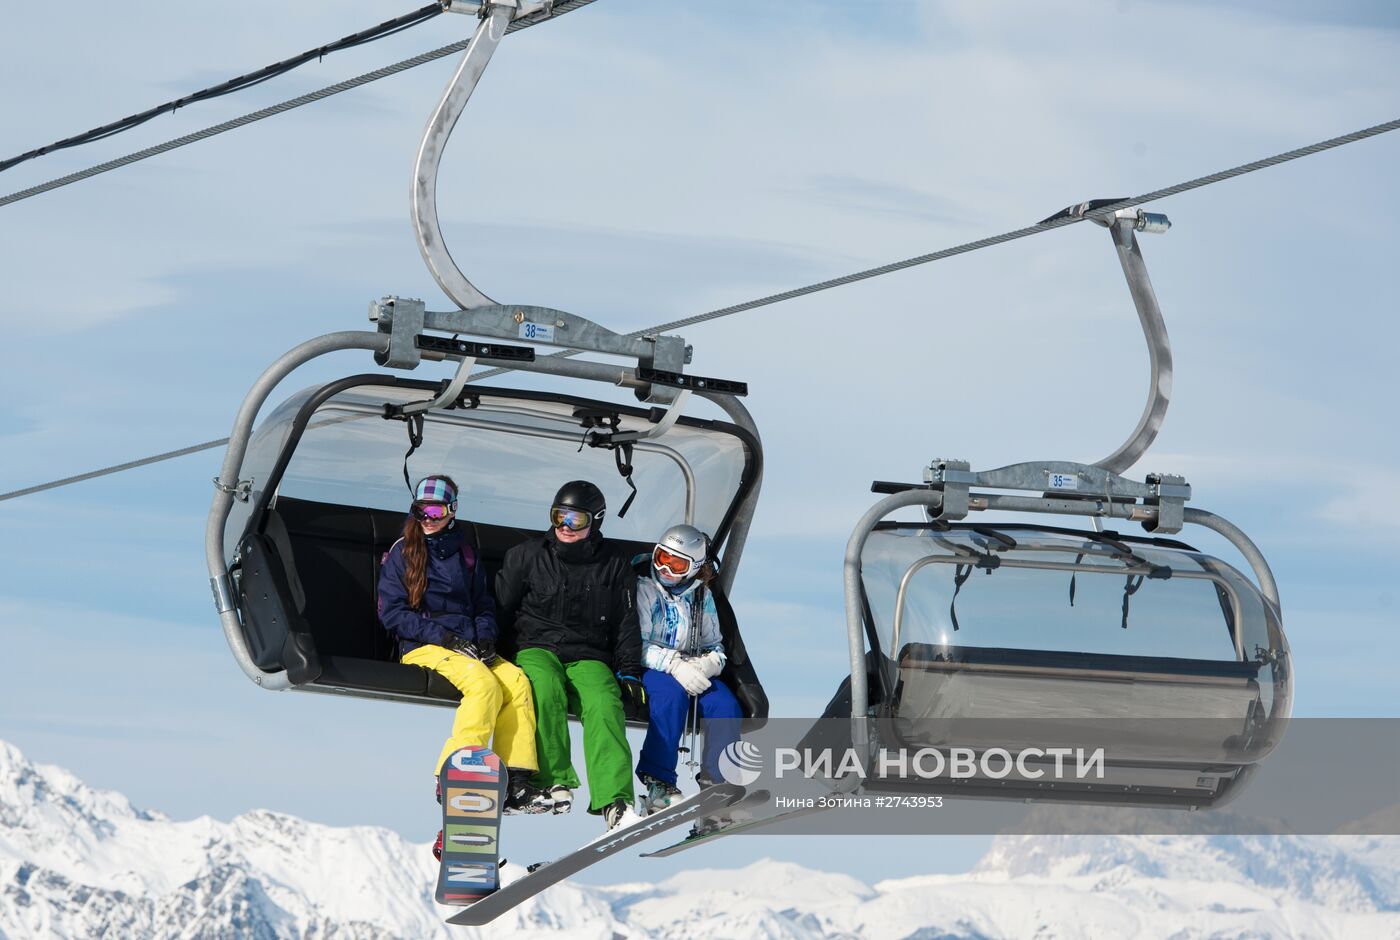 Открытие горнолыжного сезона в Сочи